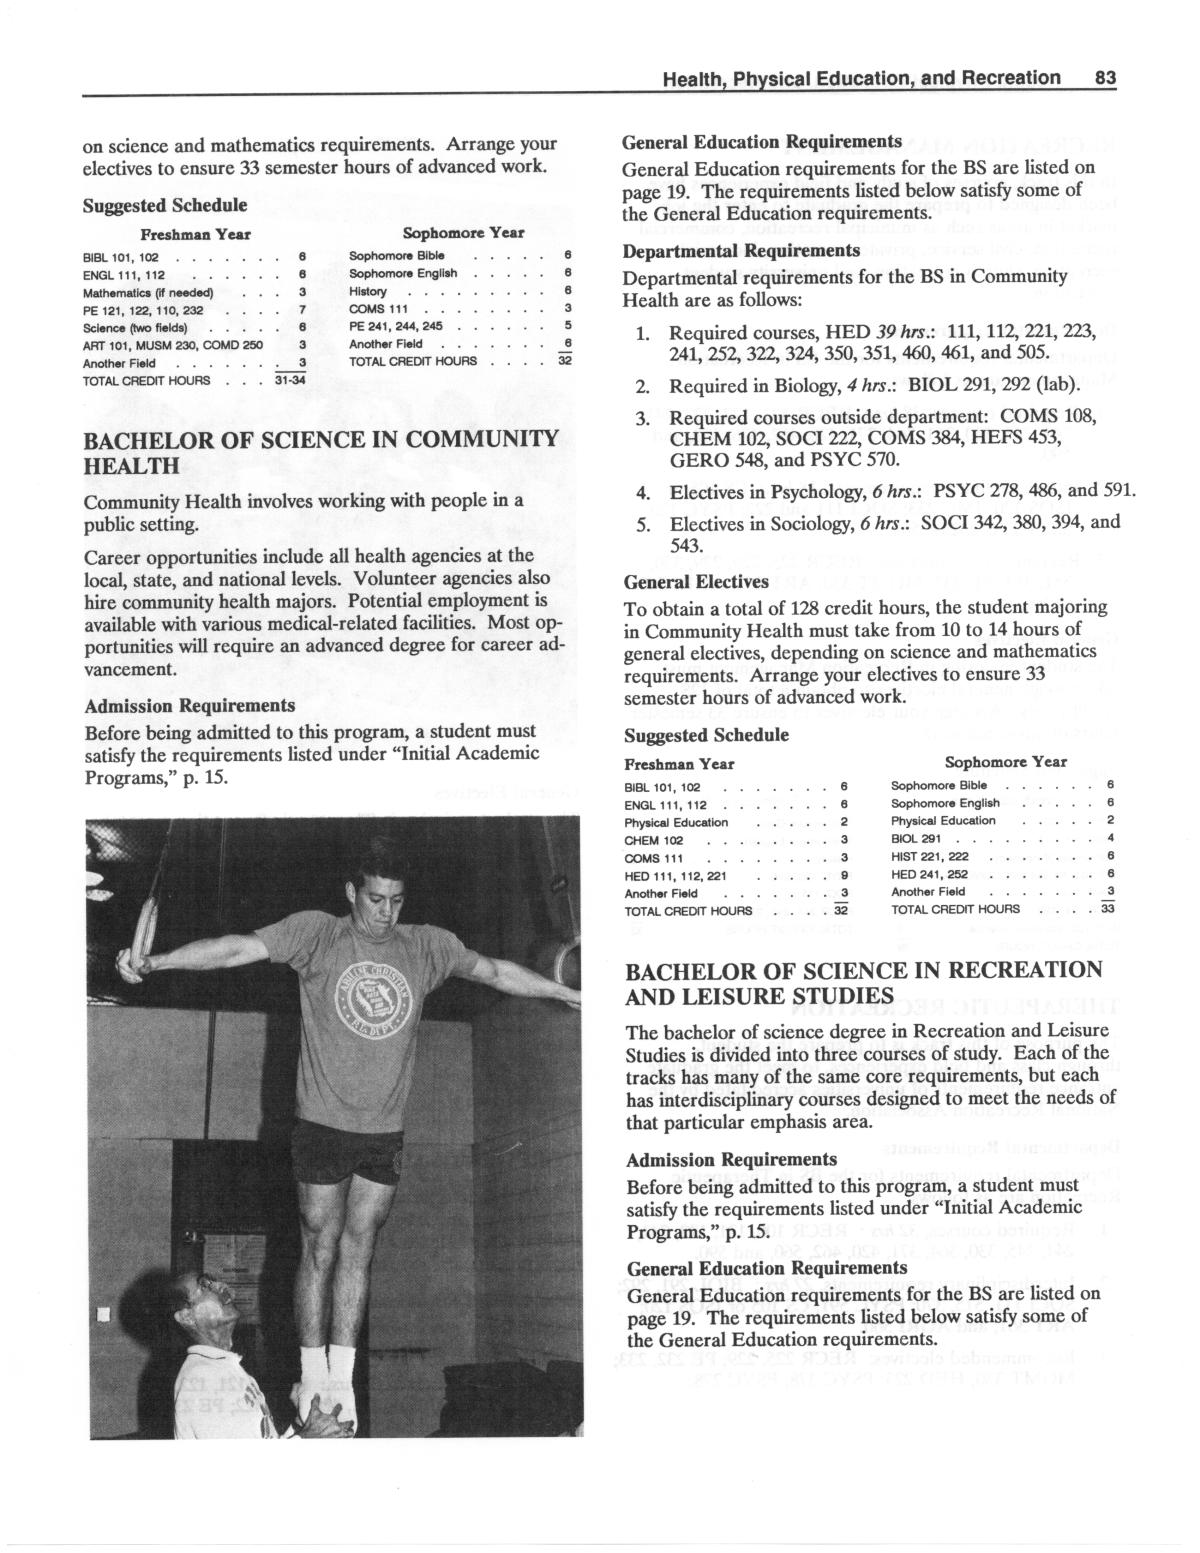 Catalog of Abilene Christian University, 1989-1990
                                                
                                                    83
                                                